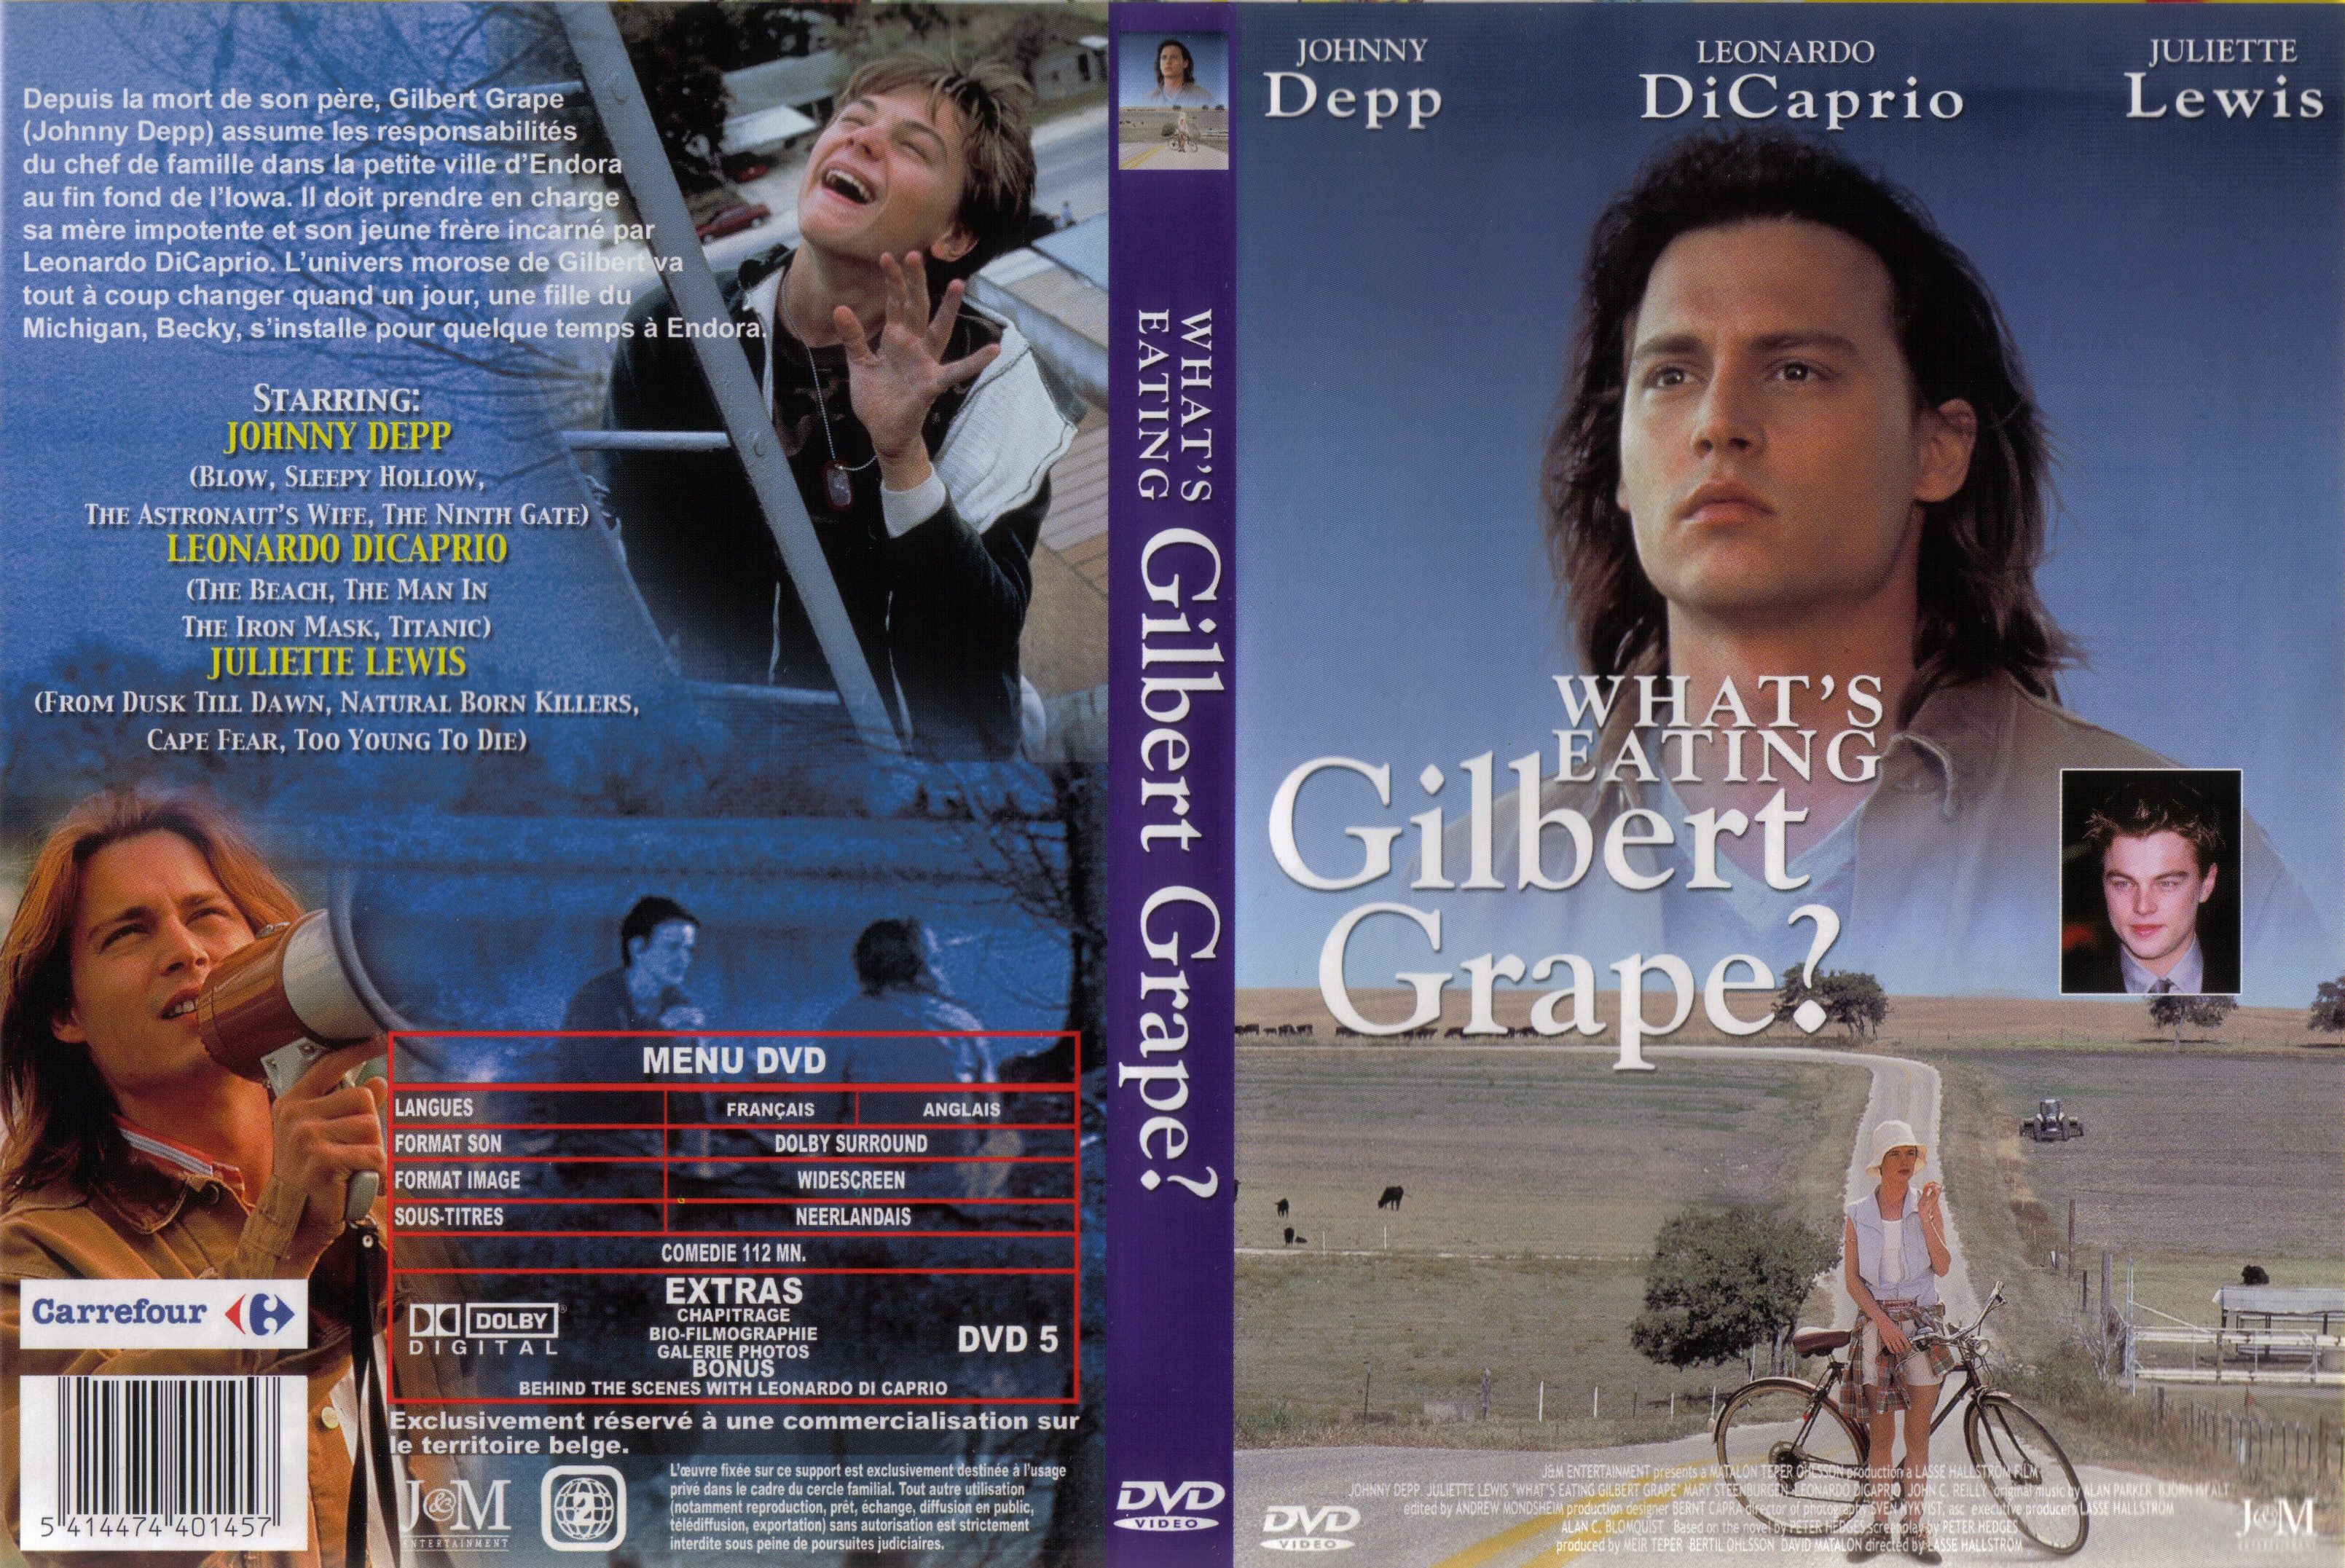 Jaquette DVD Gilbert Grape